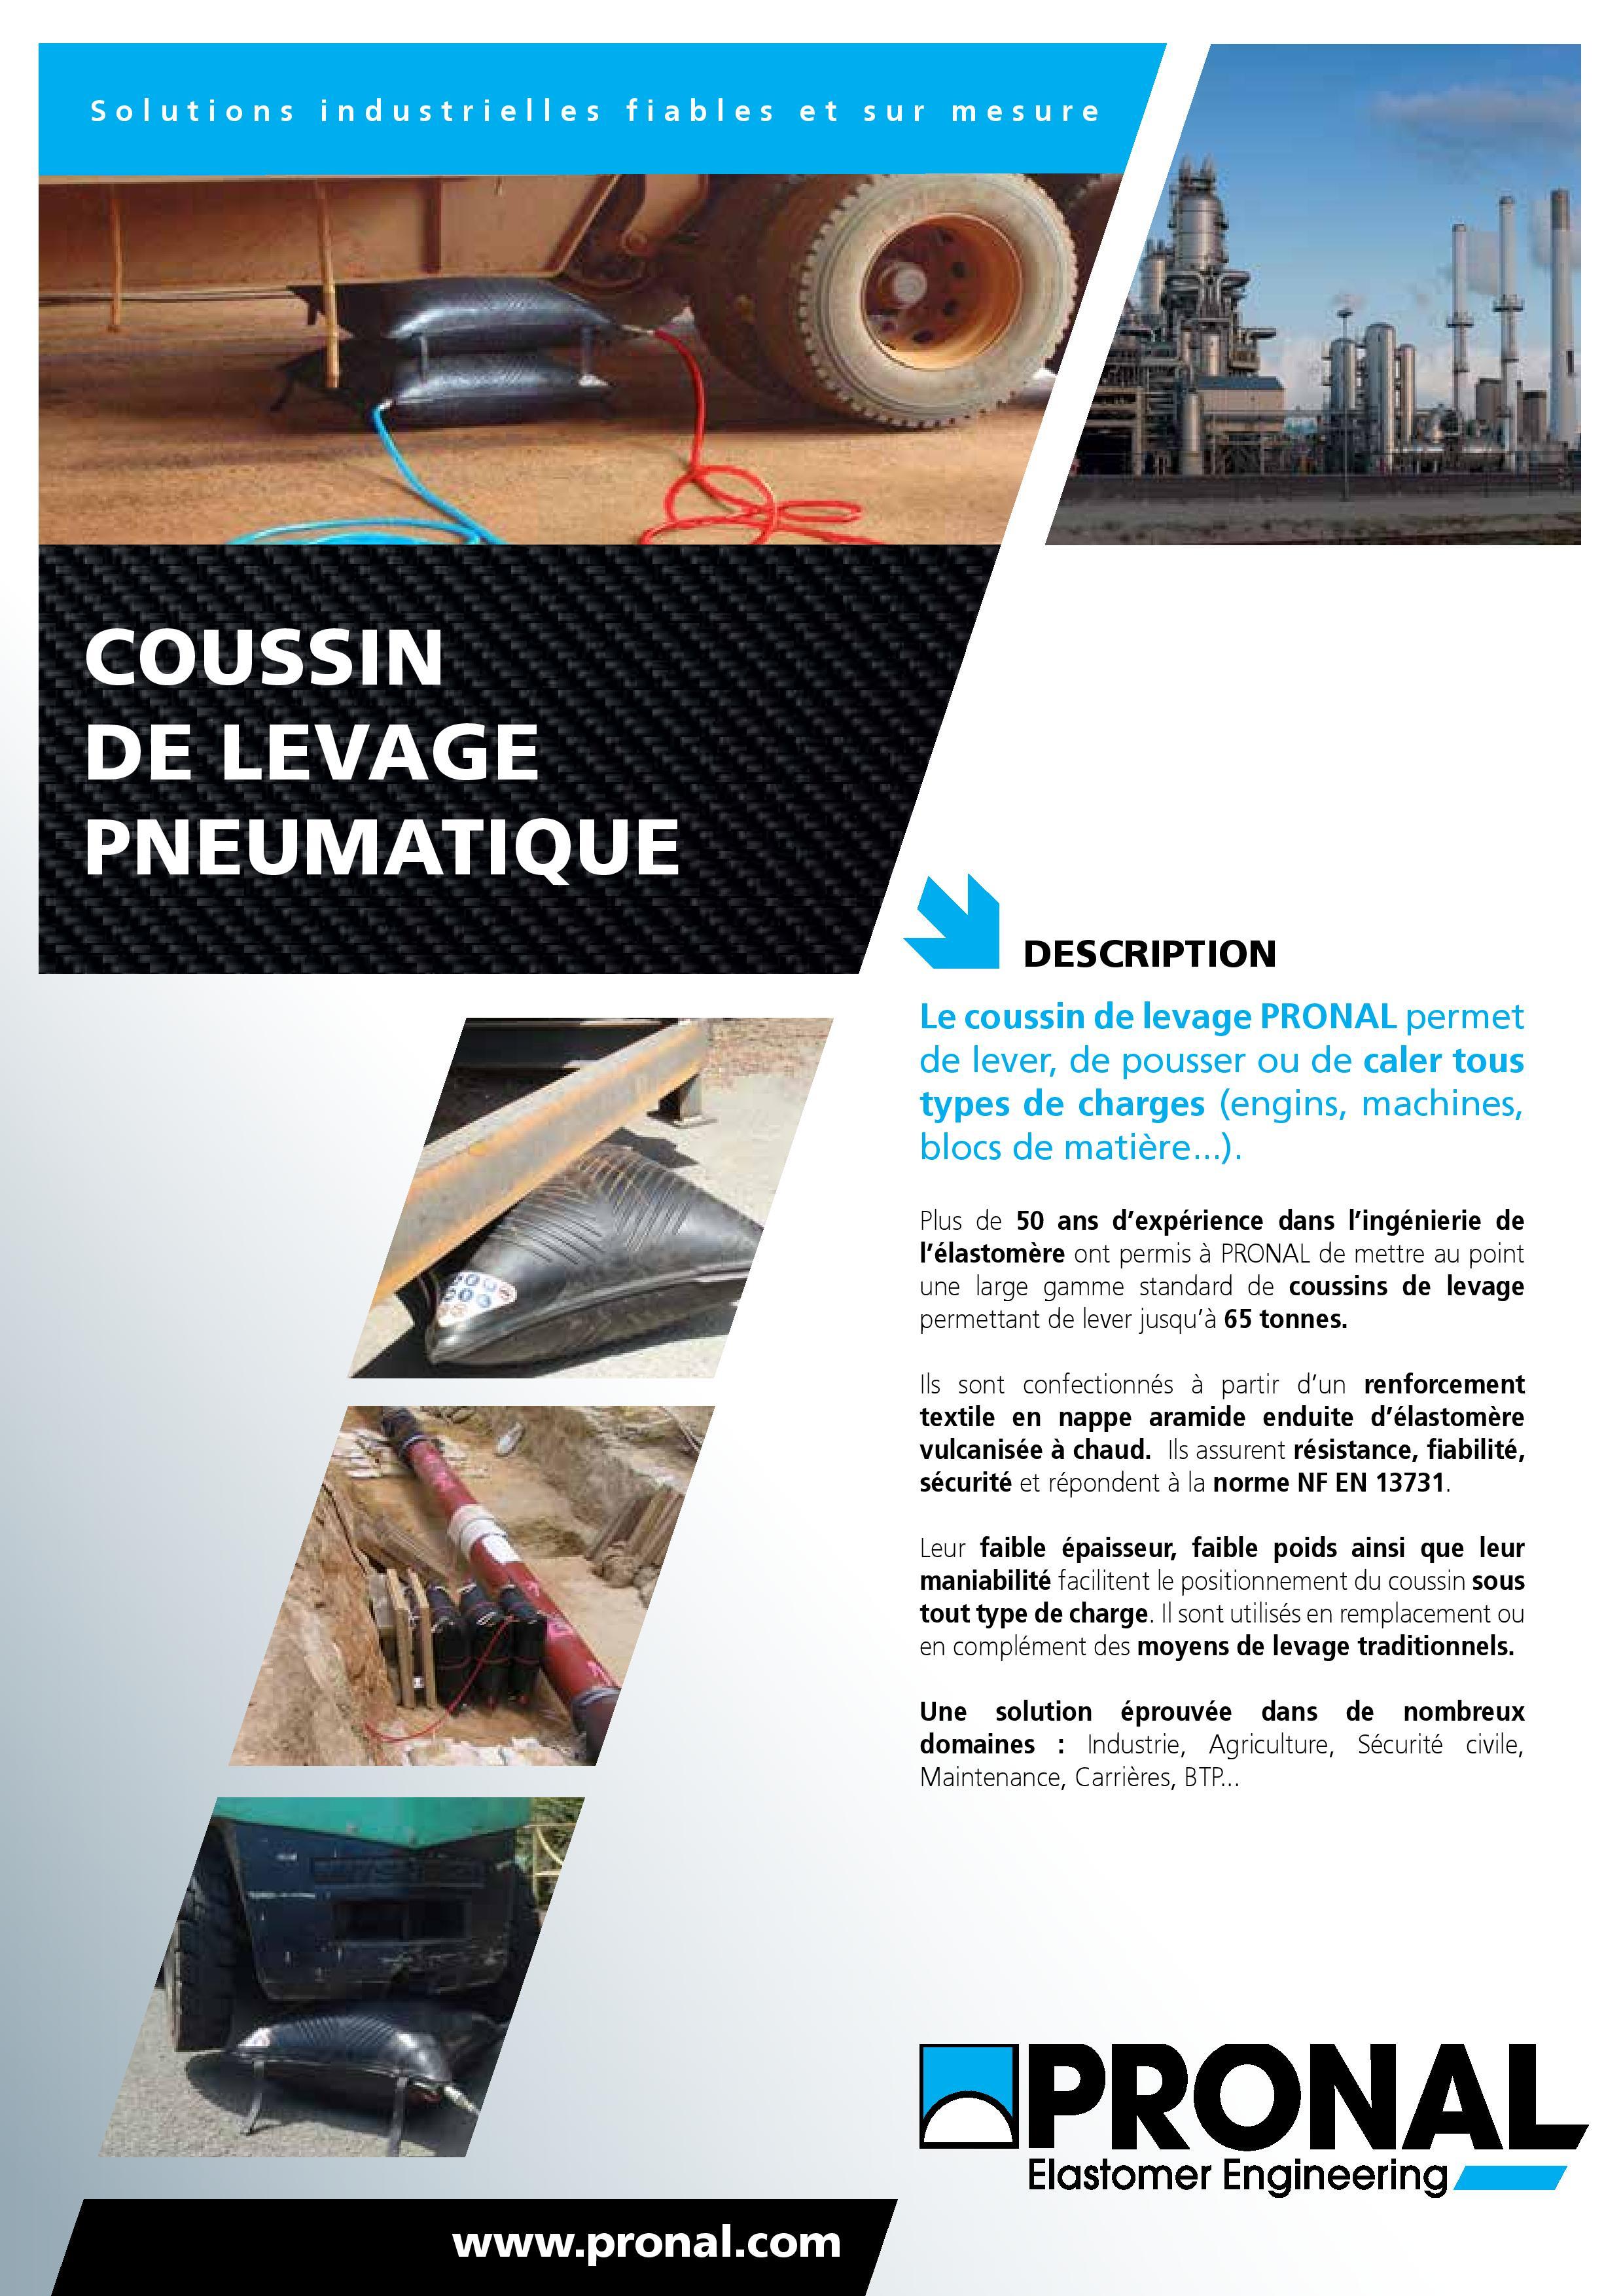 PRONAL-COUSSIN_DE_LEVAGE_PNEUMATIQUE-page-001